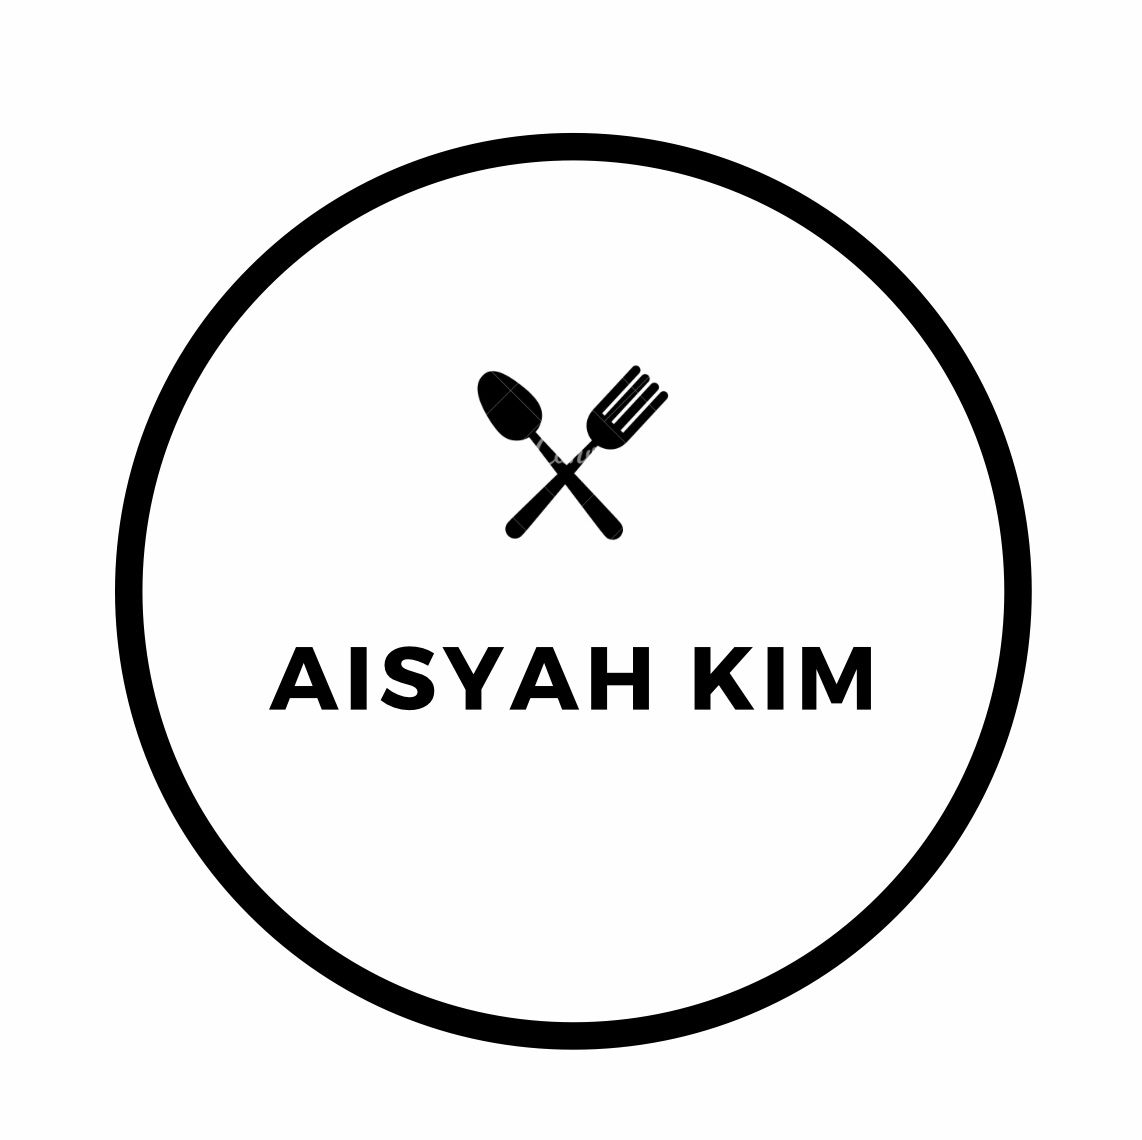 AISYAH KIM